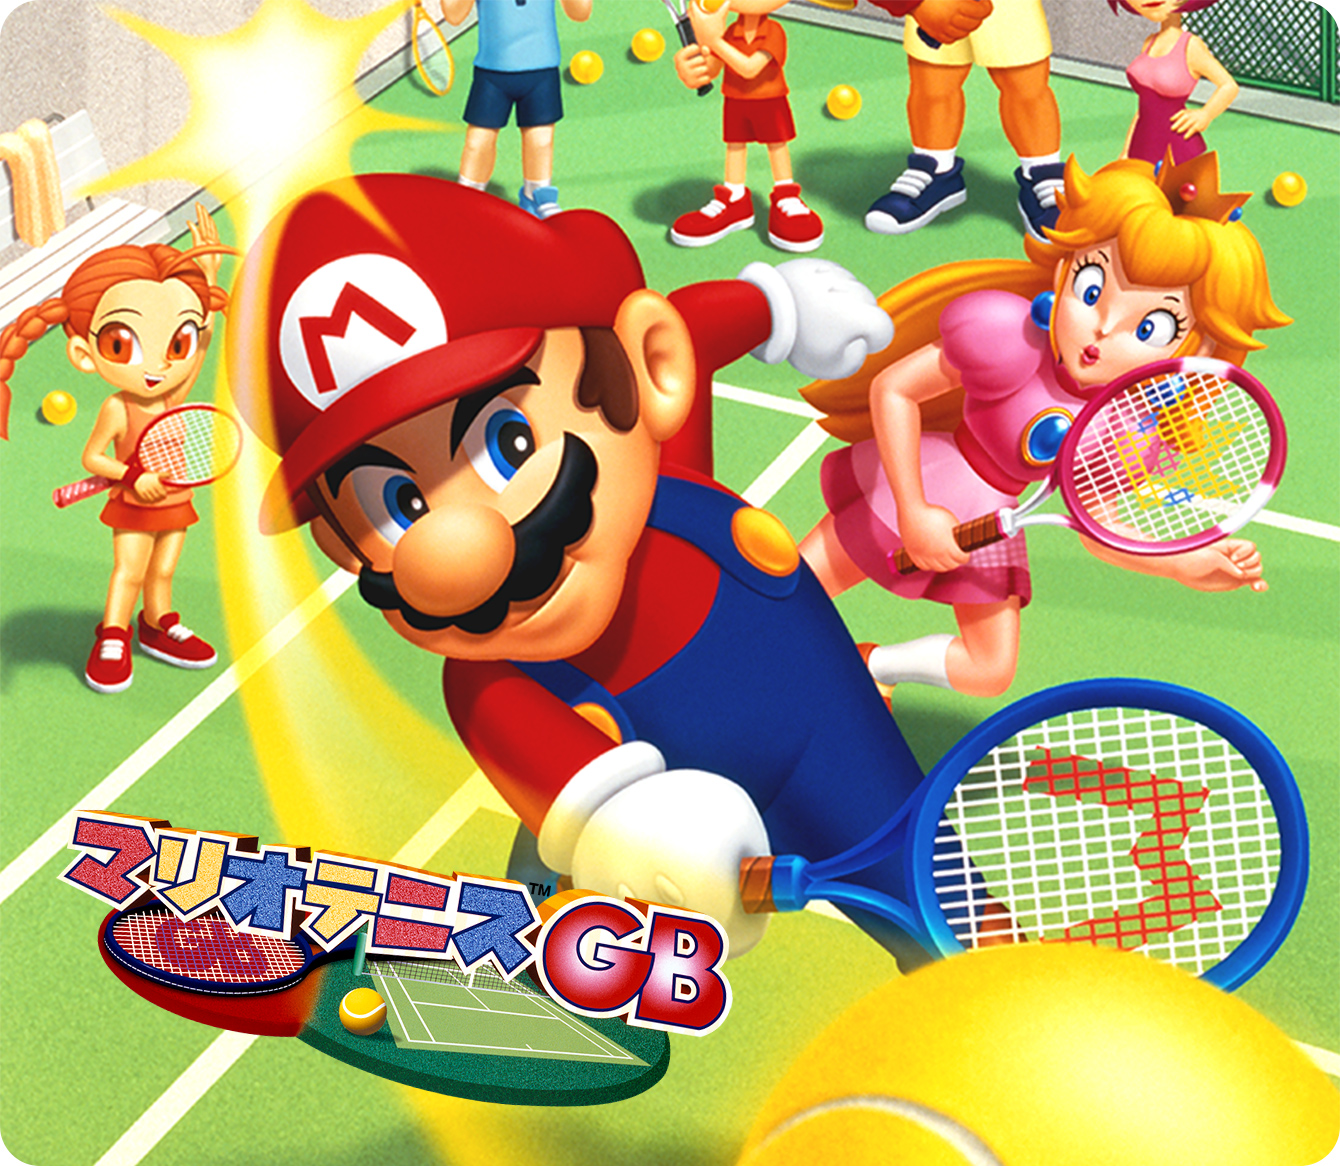 マリオテニスgb ゲームアーカイブ マリオポータル Nintendo